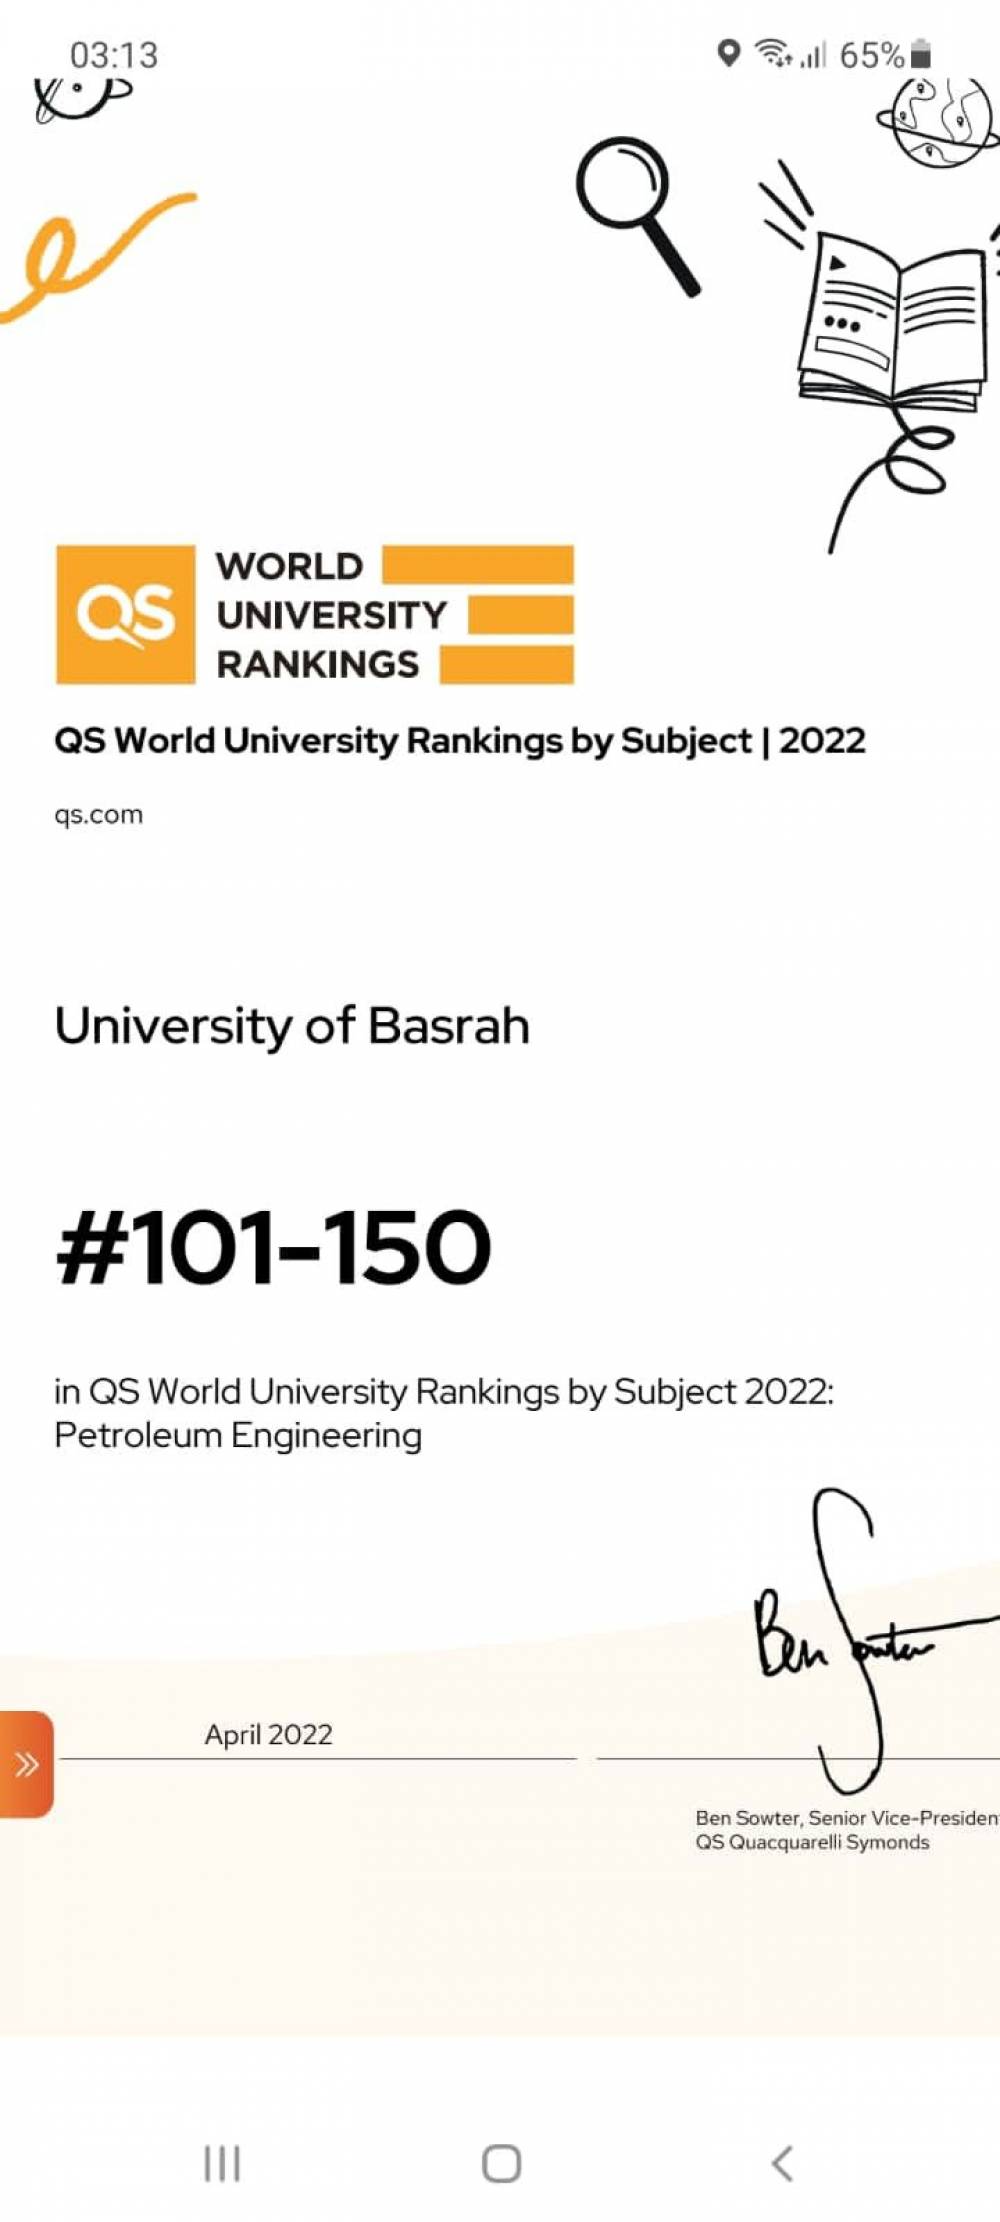 جامعة البصرة تصنف واحدة من افضل الجامعات في العالم حسب تصنيف QS of subject 2022